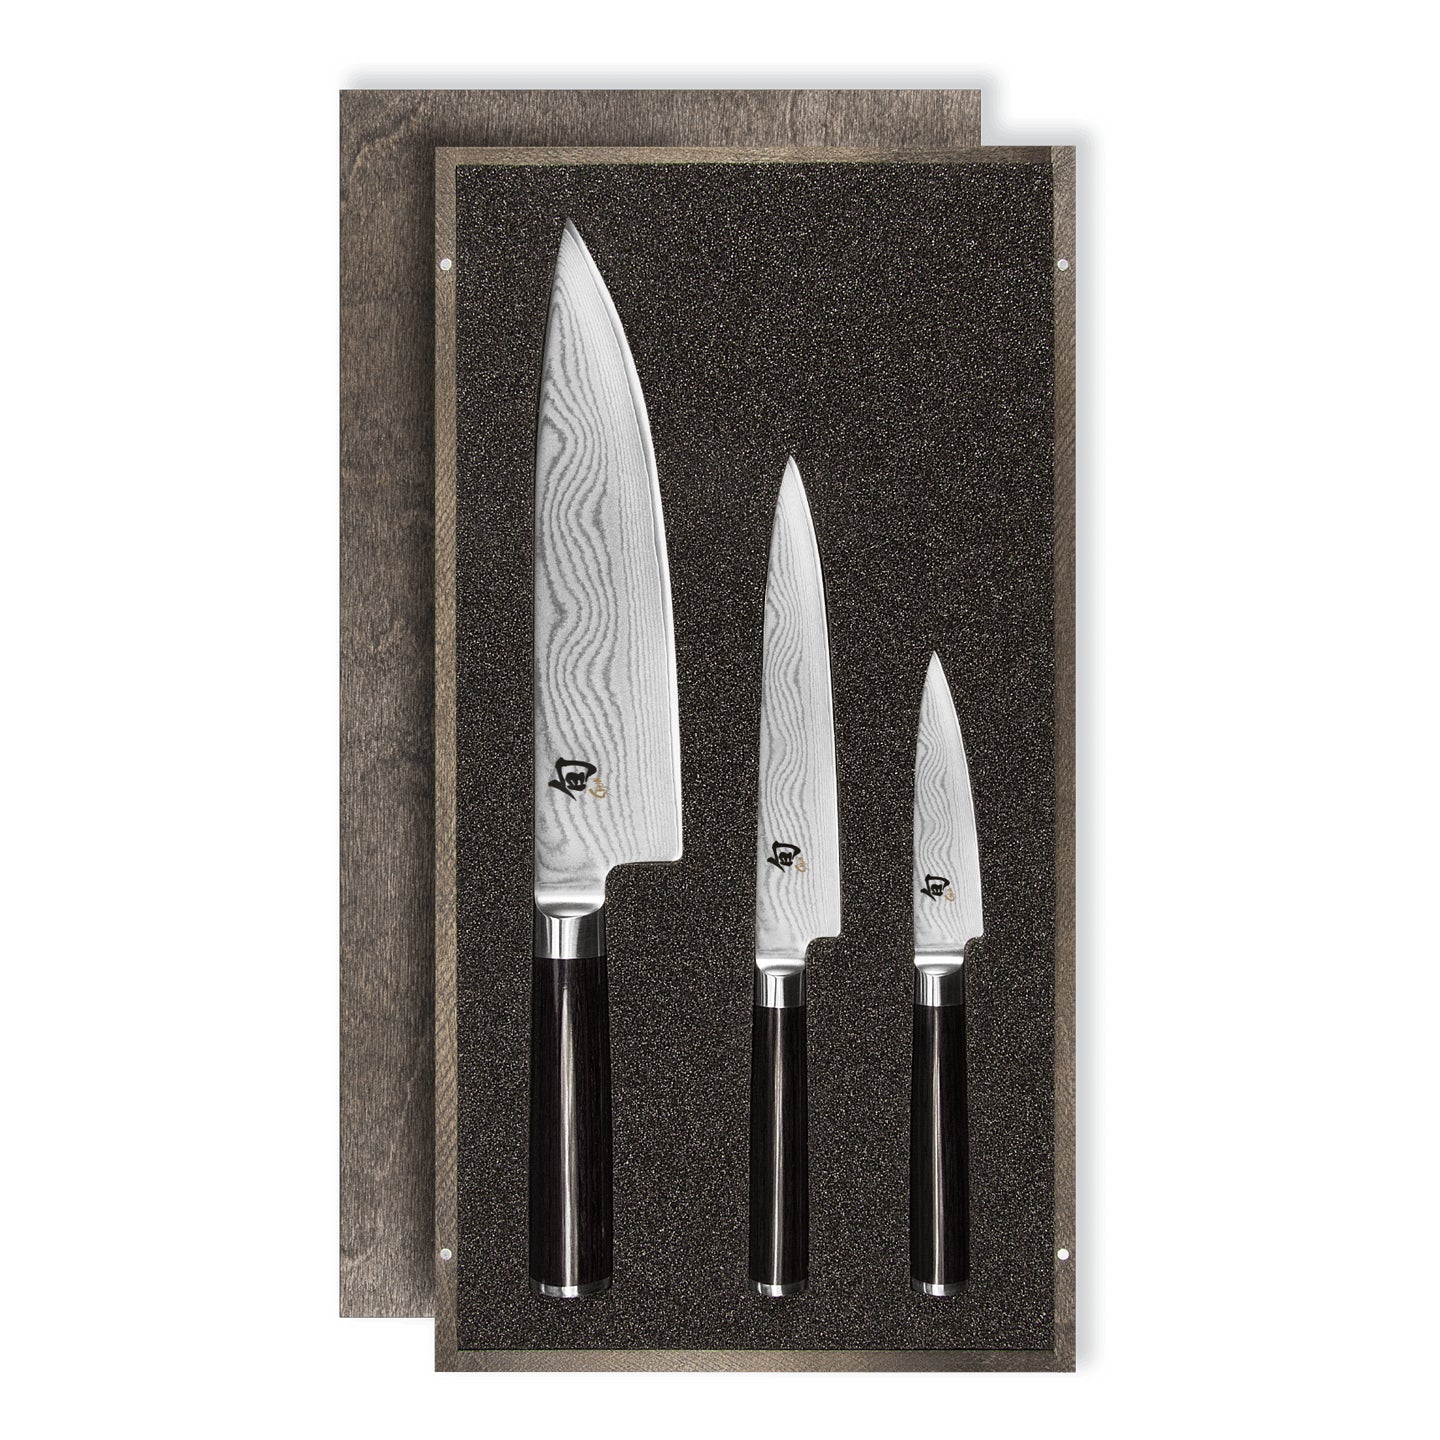 Kai Shun Classic Knife Set